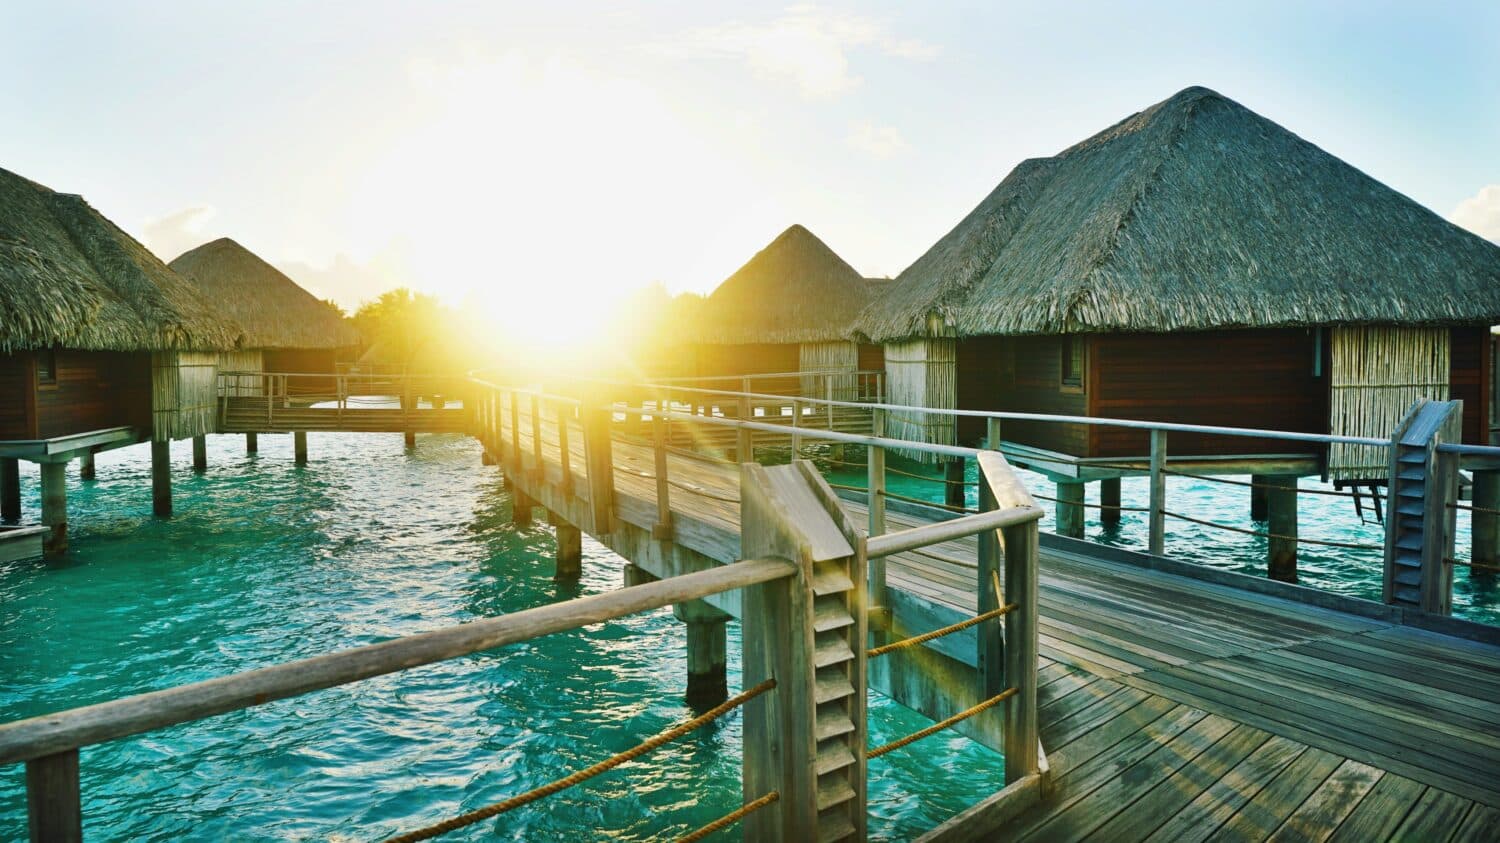 Vista do nascer do sol em Bora Bora, na Polinésia Francesa, com cabanas em cima do mar, ponte de madeira que liga elas e mar verde. Representa chip celular Bora Bora